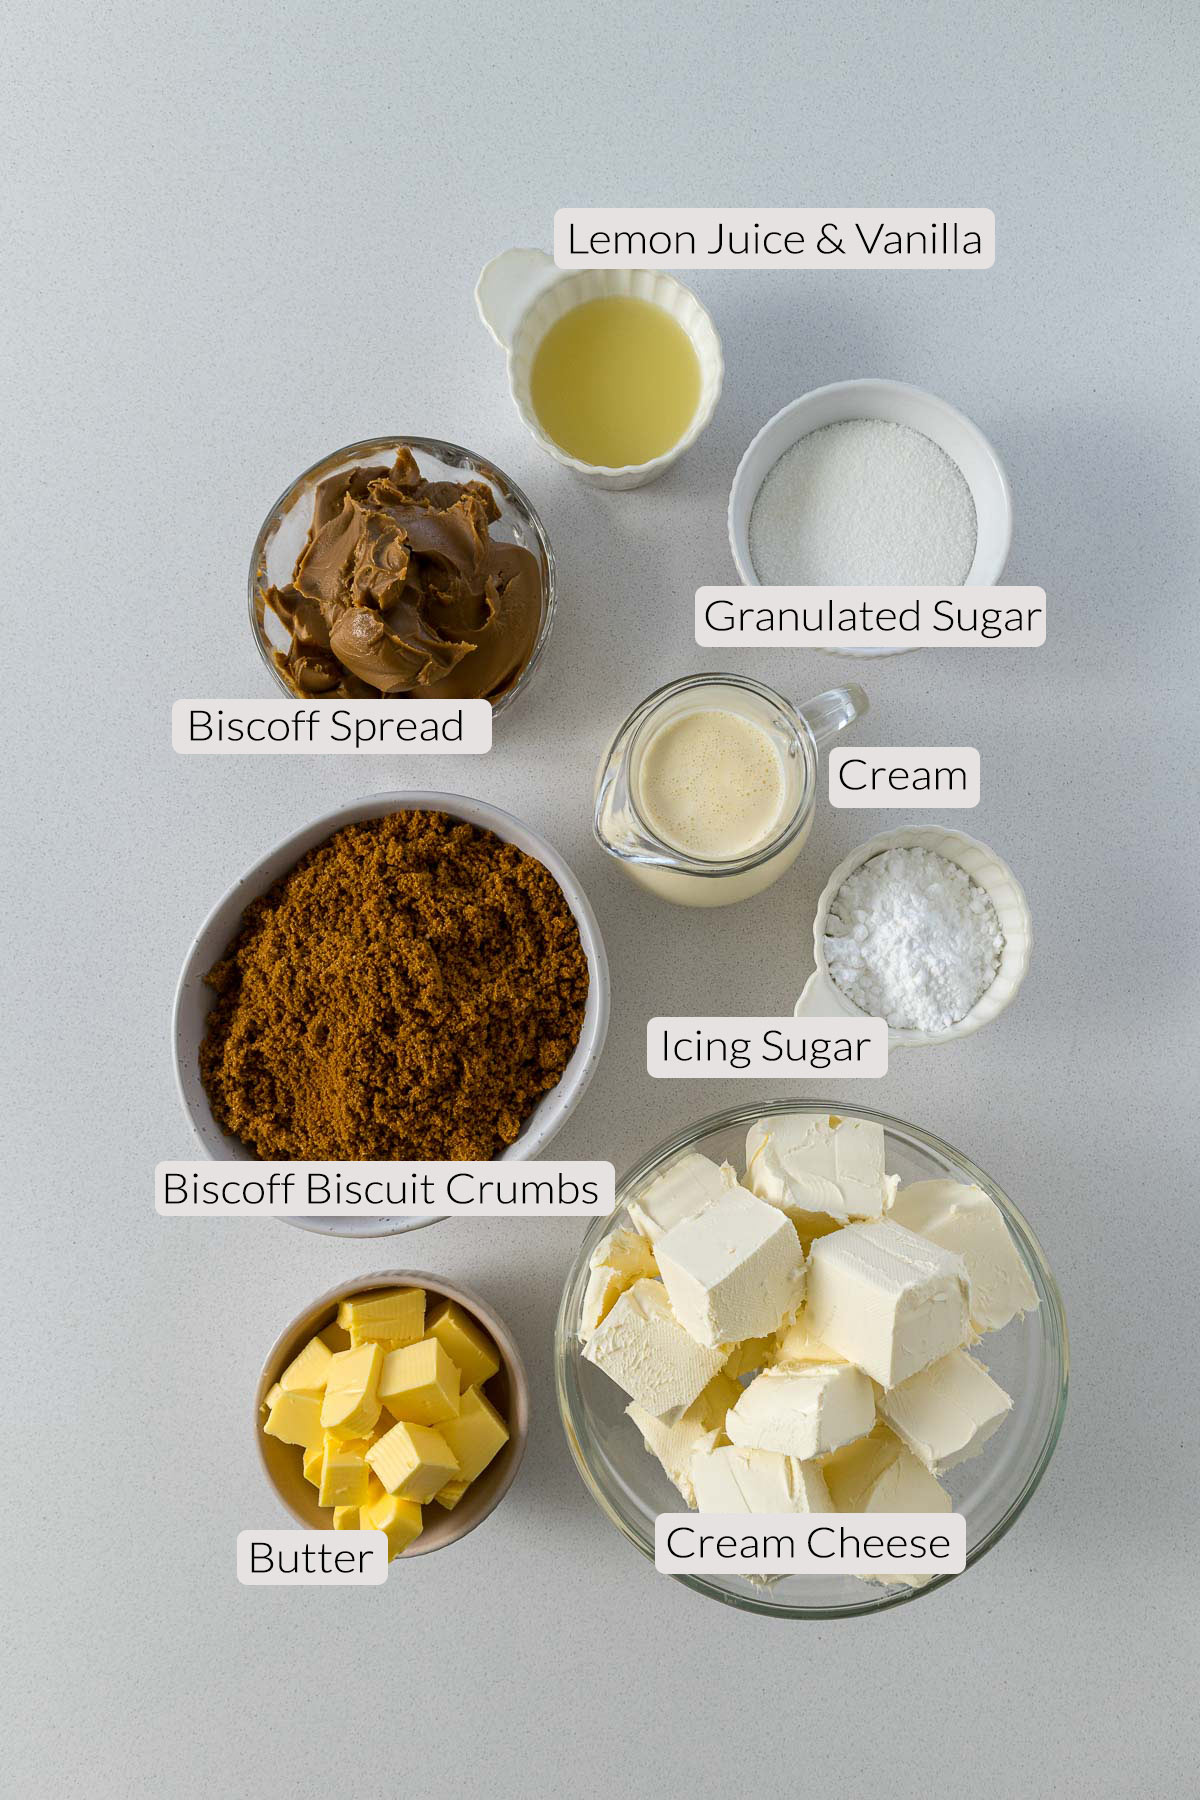 Biscoff Cheesecake Ingredinets - lemon juice, vanilla, sugar, icing sugar, cream, Biscoff spread, Biscoff Biscuits, butter, and cream cheese.